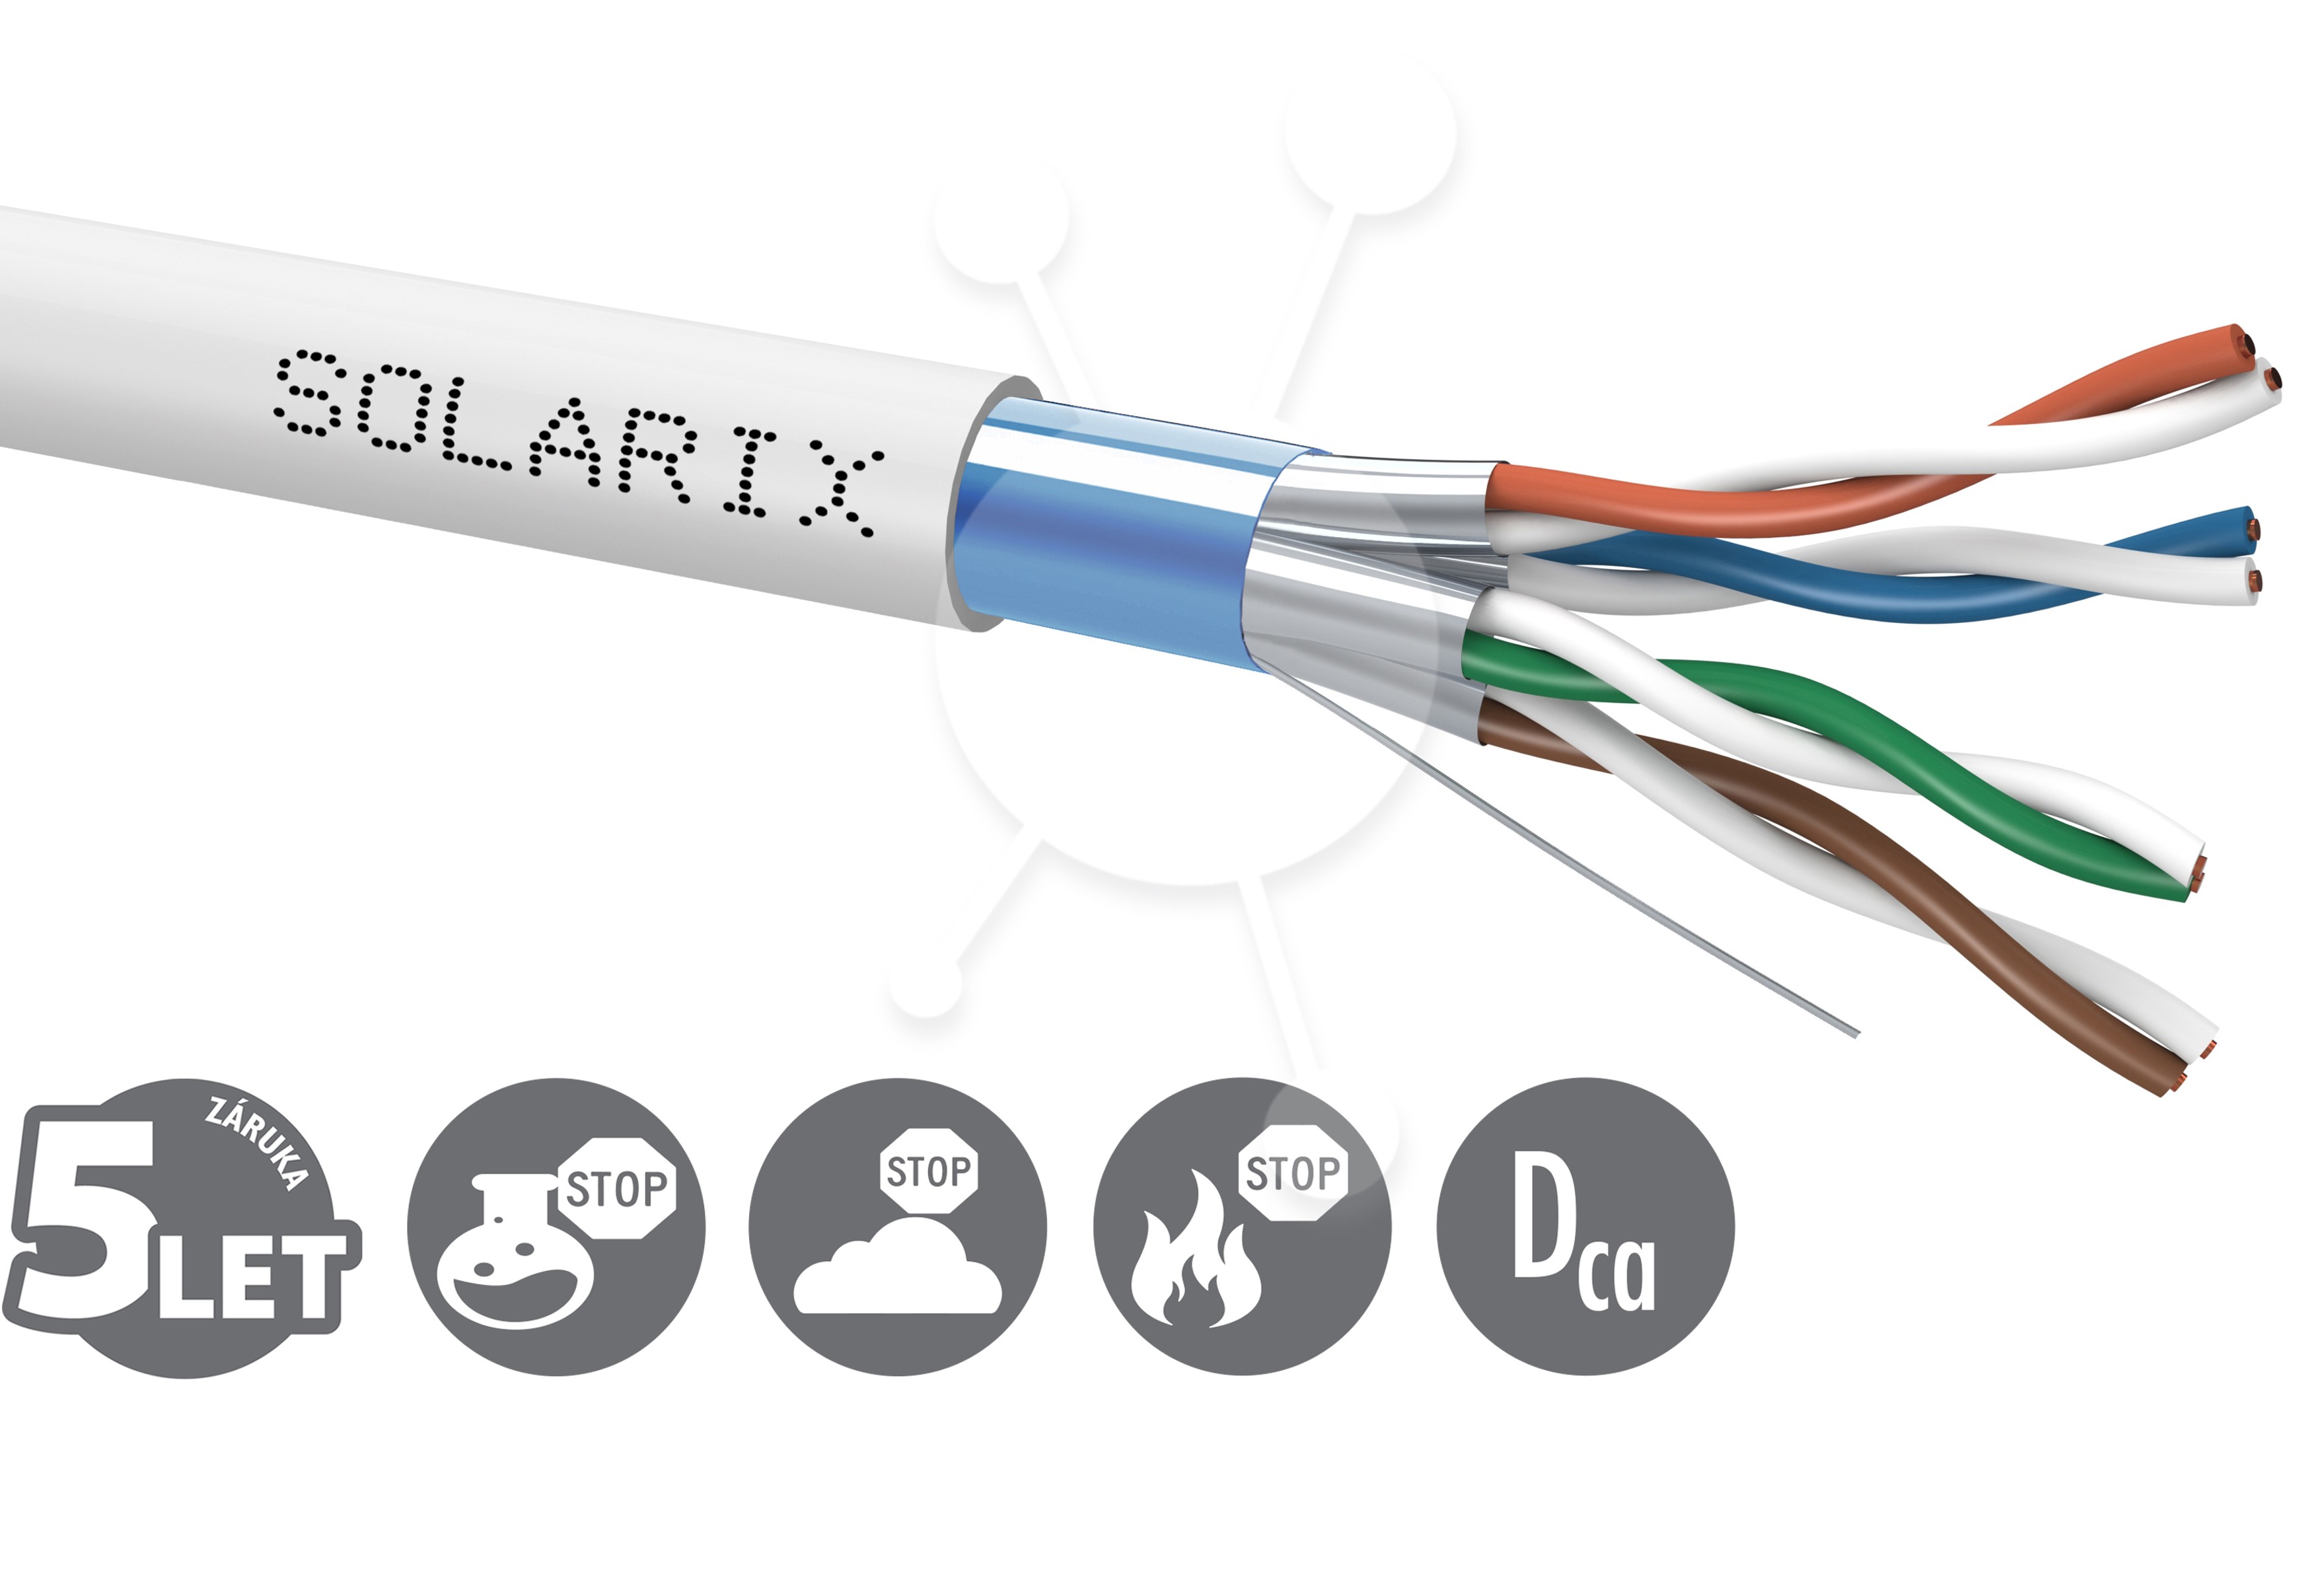 Instalační kabel Solarix CAT6A FFTP LSOH Dca-s2,d2,a1 500m/cívka SXKD-